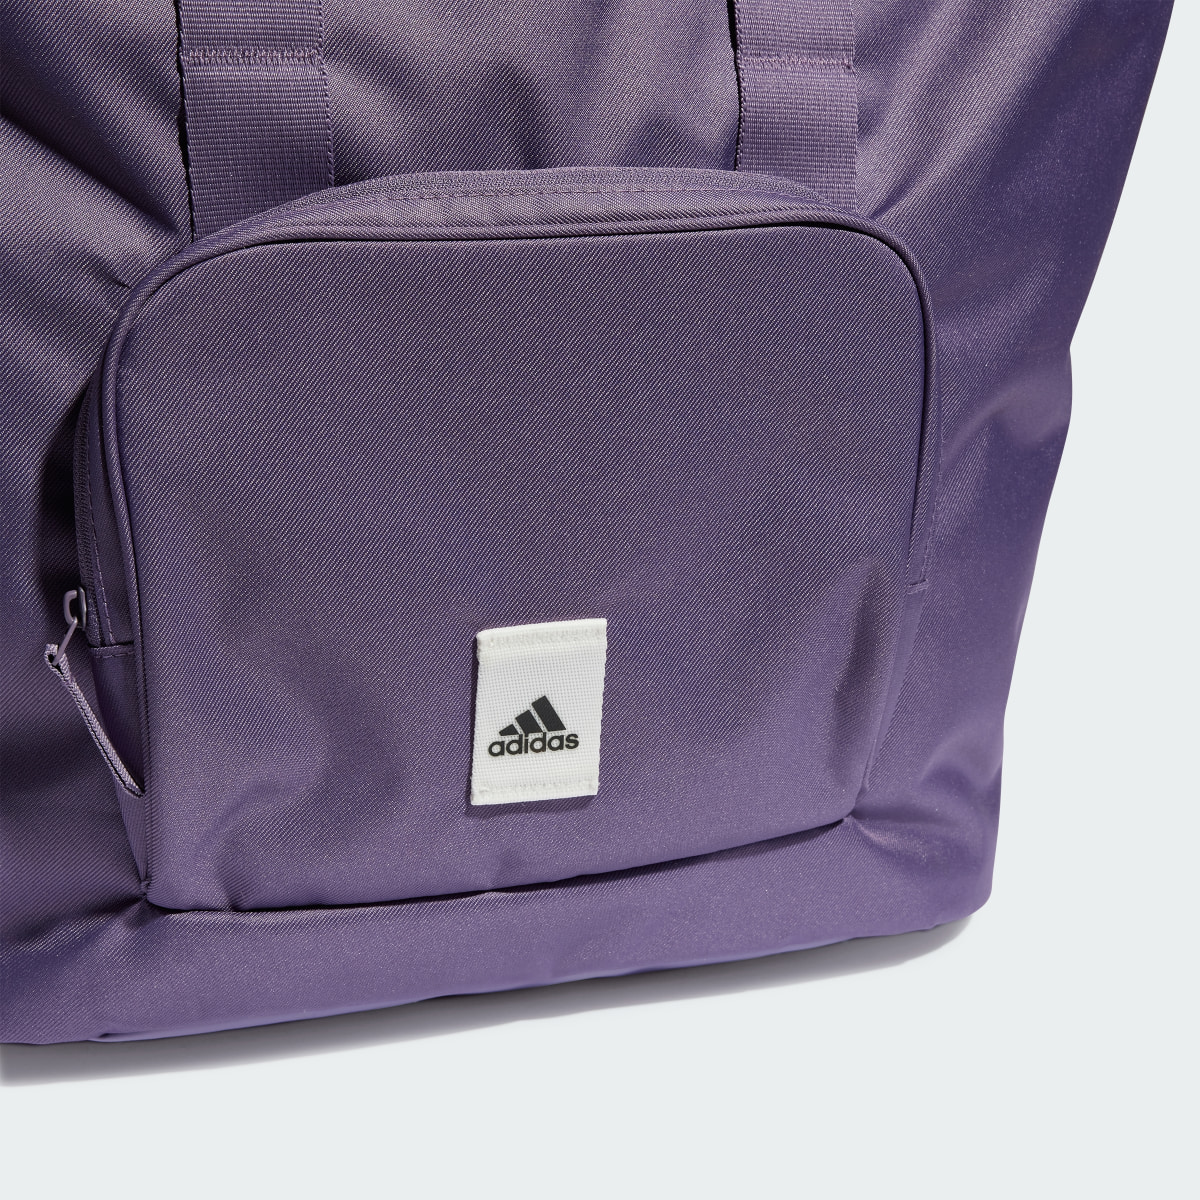 Adidas Tote Bag Prime. 6